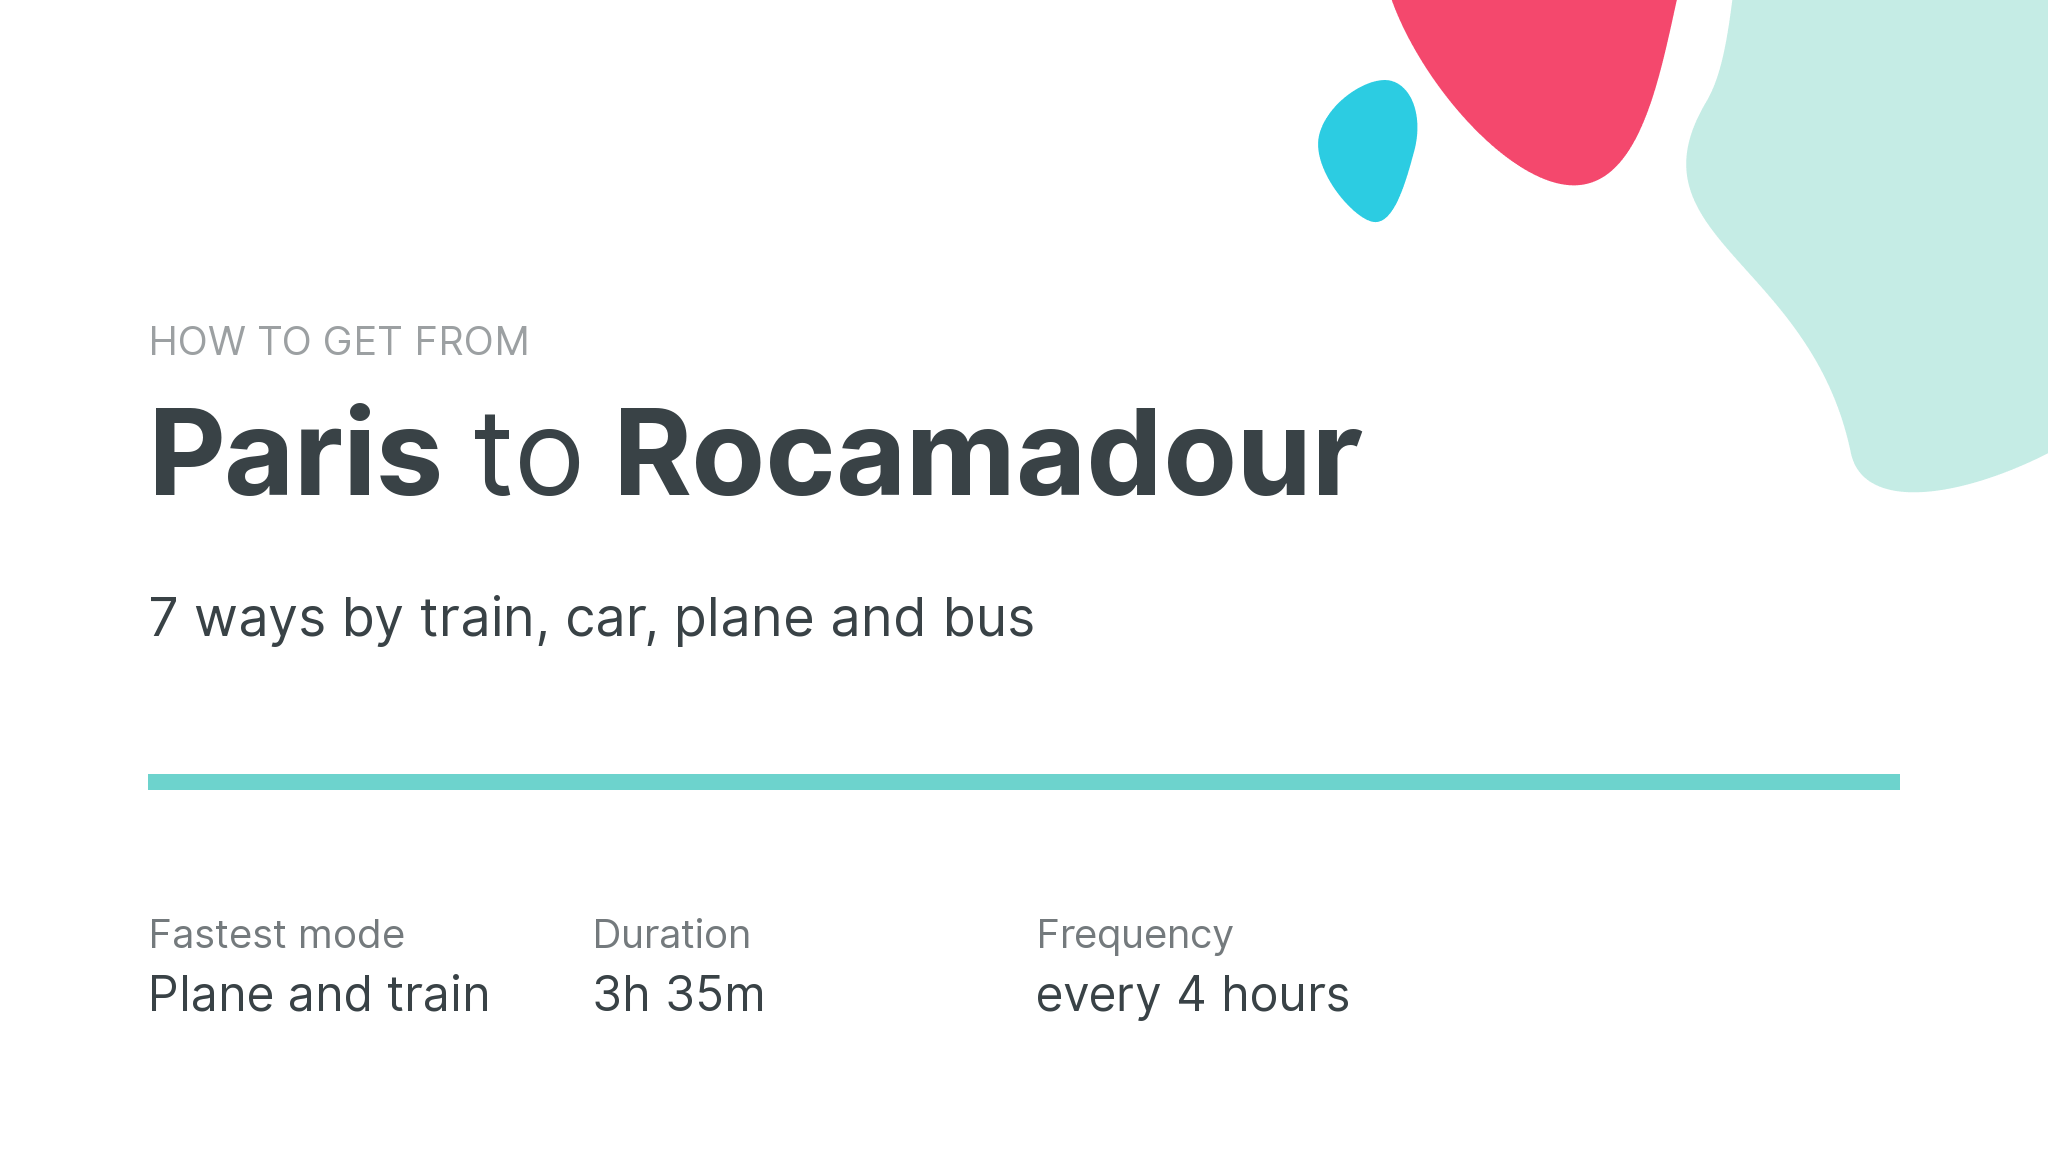 How do I get from Paris to Rocamadour